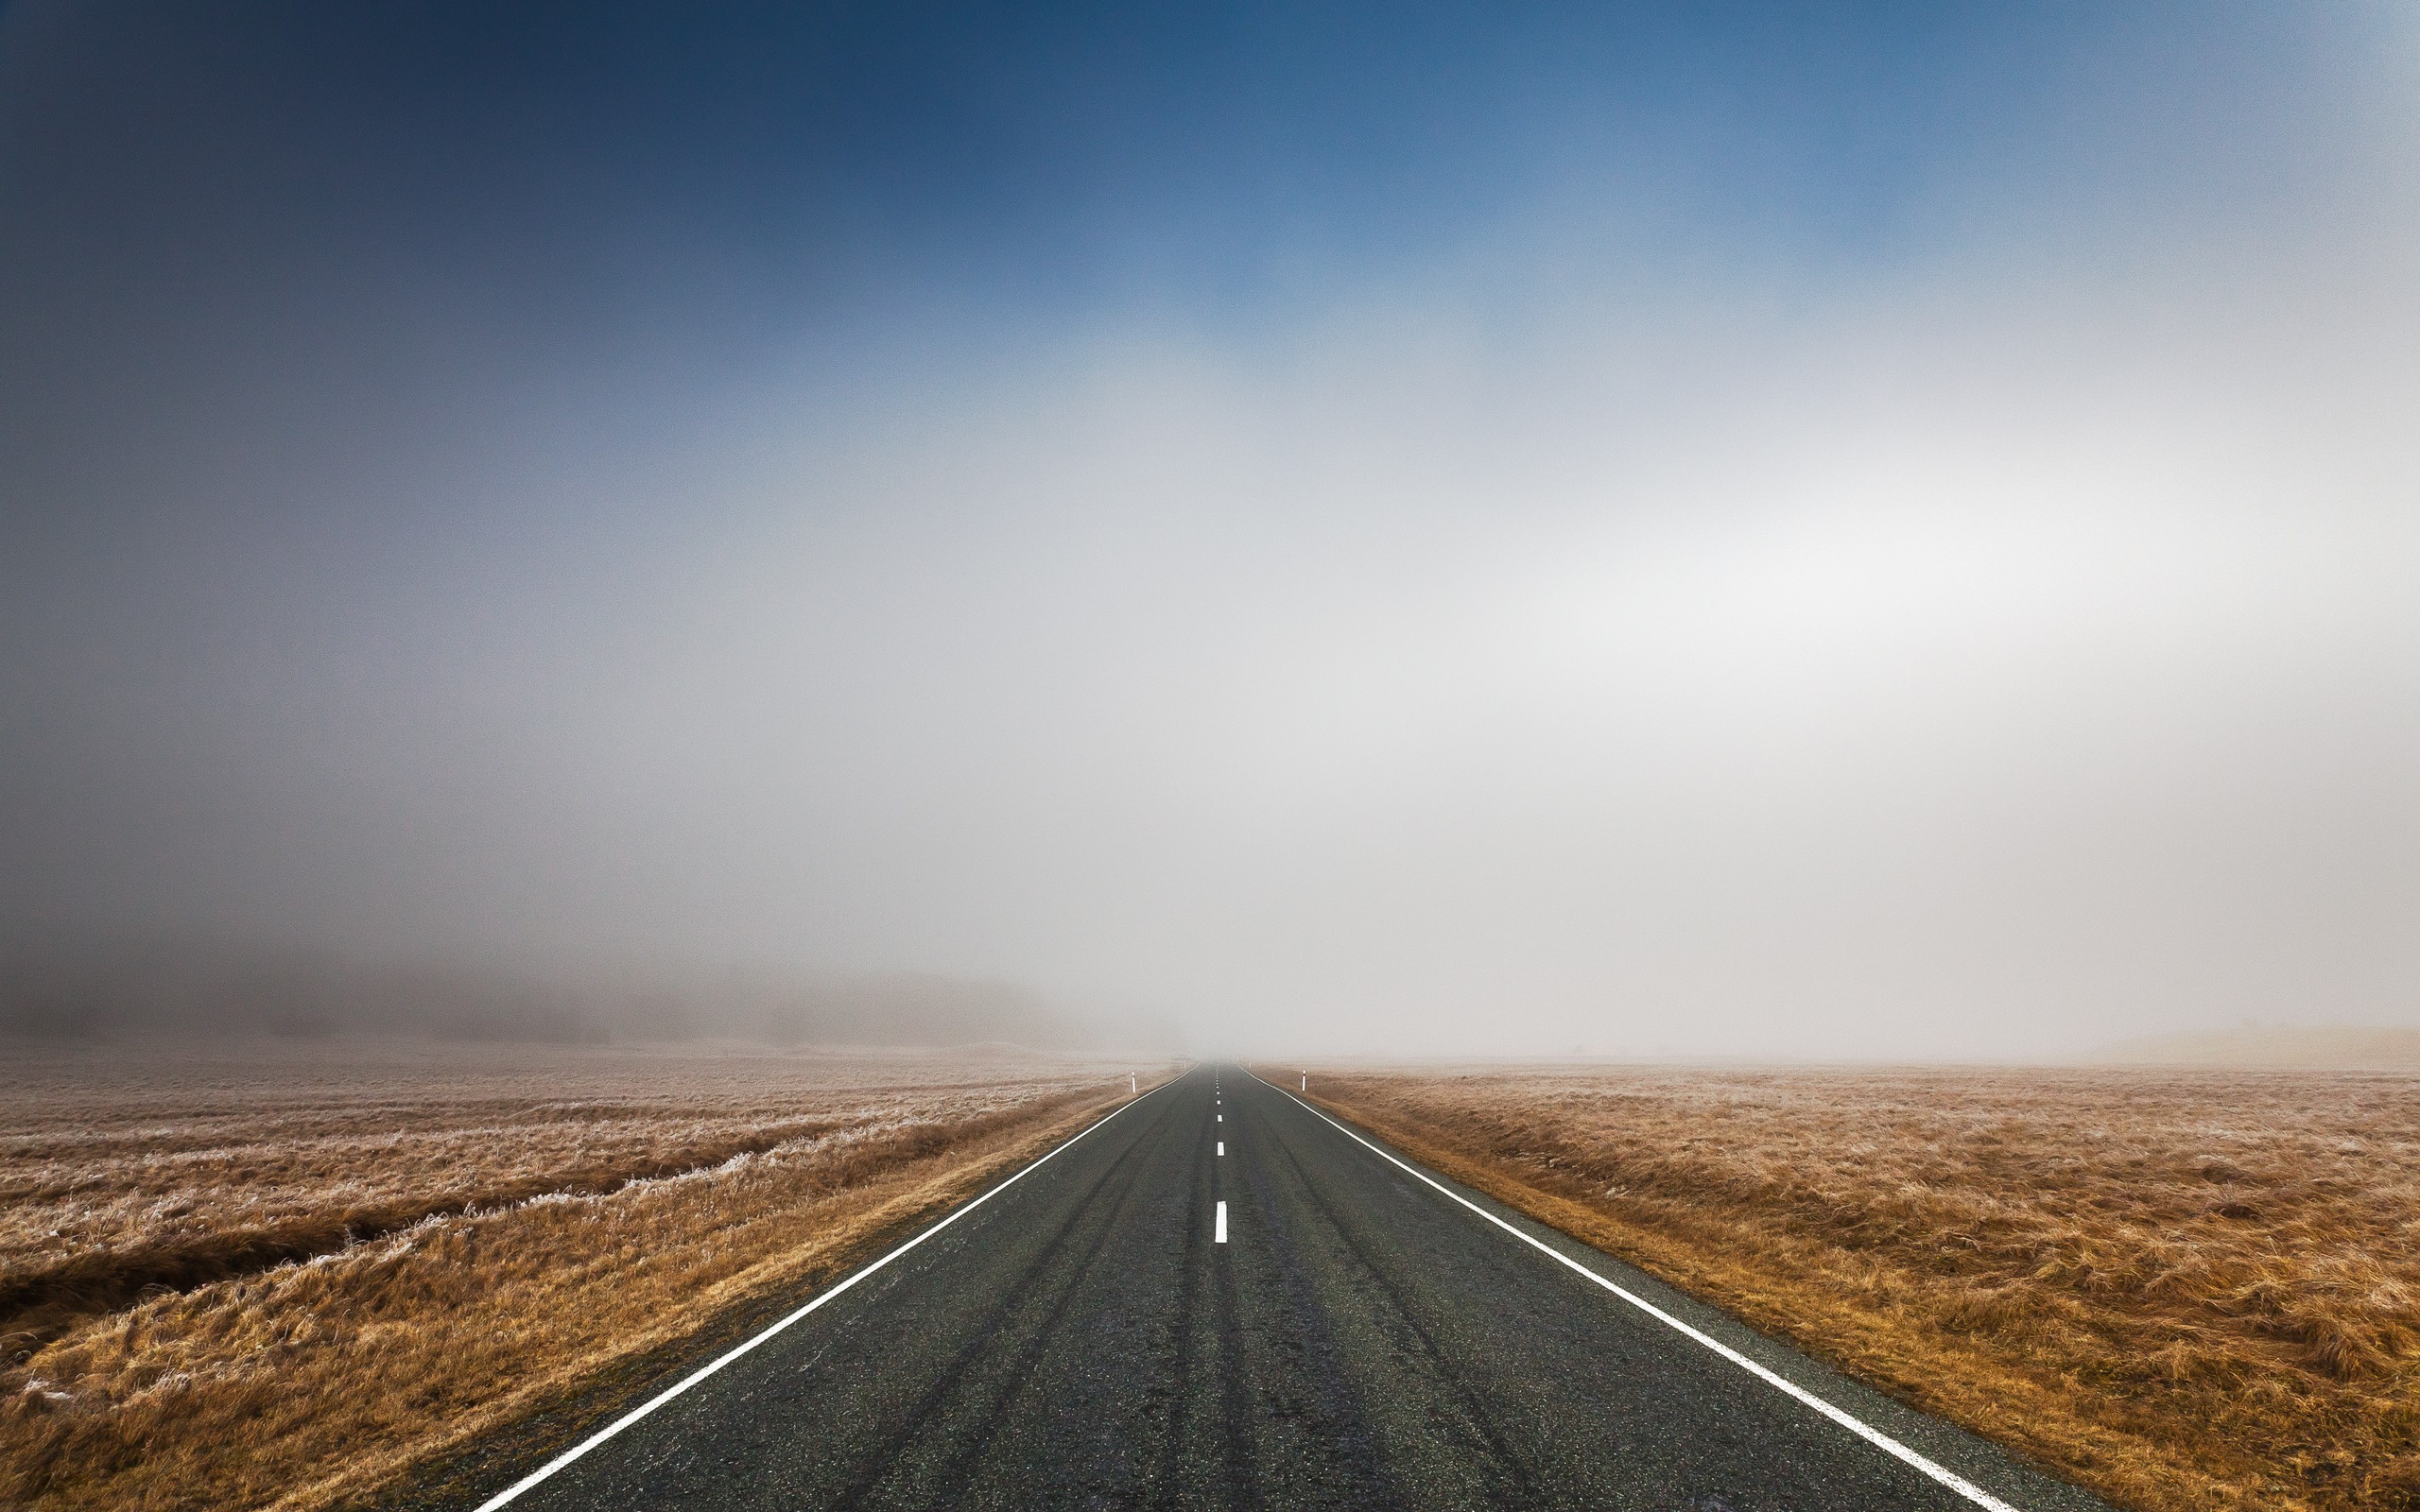 landscapes, mist, roads - desktop wallpaper